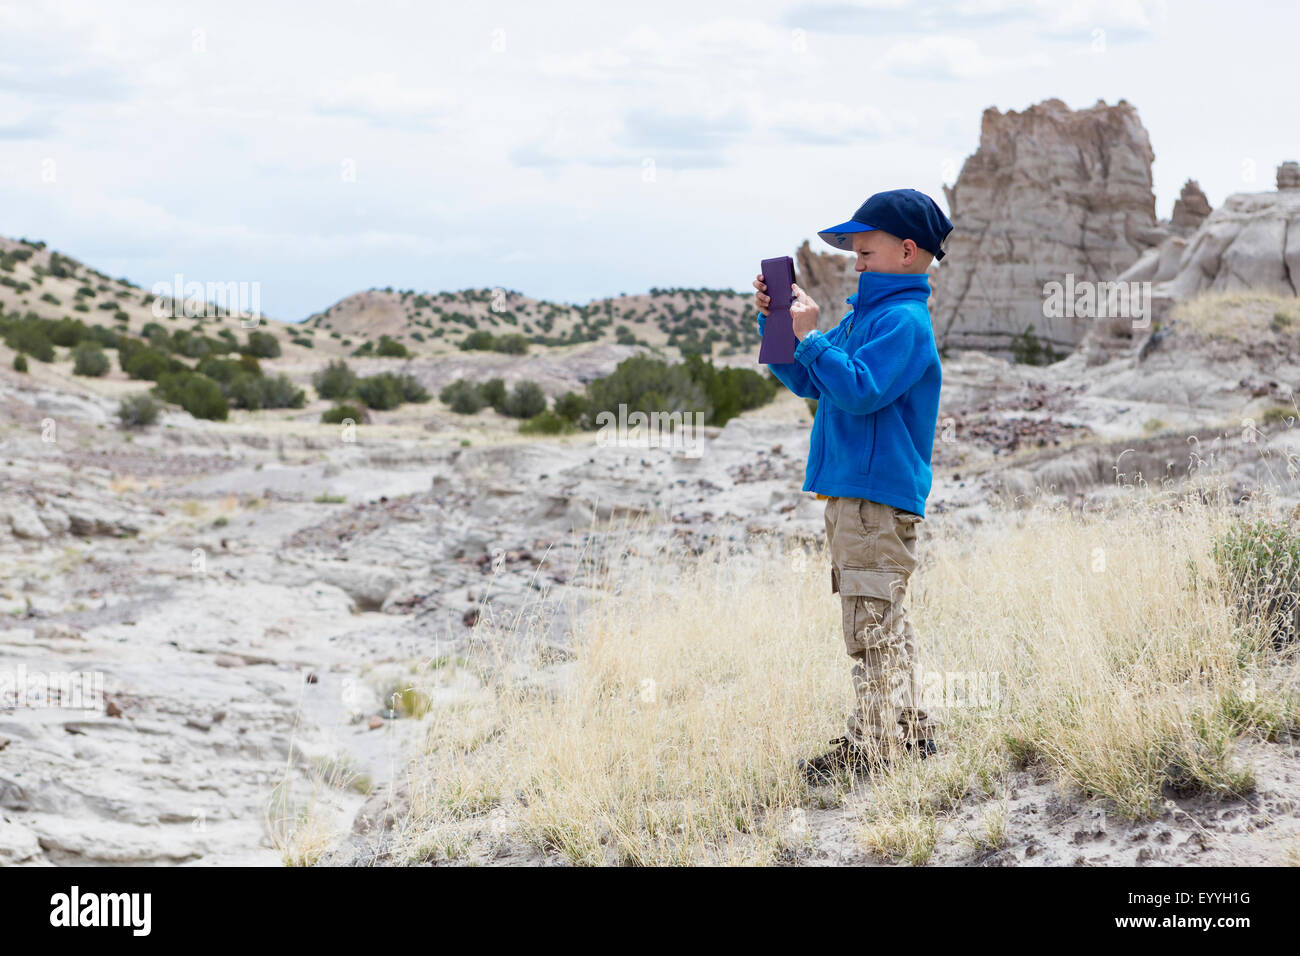 Ragazzo di fotografare le formazioni rocciose nel paesaggio del deserto Foto Stock